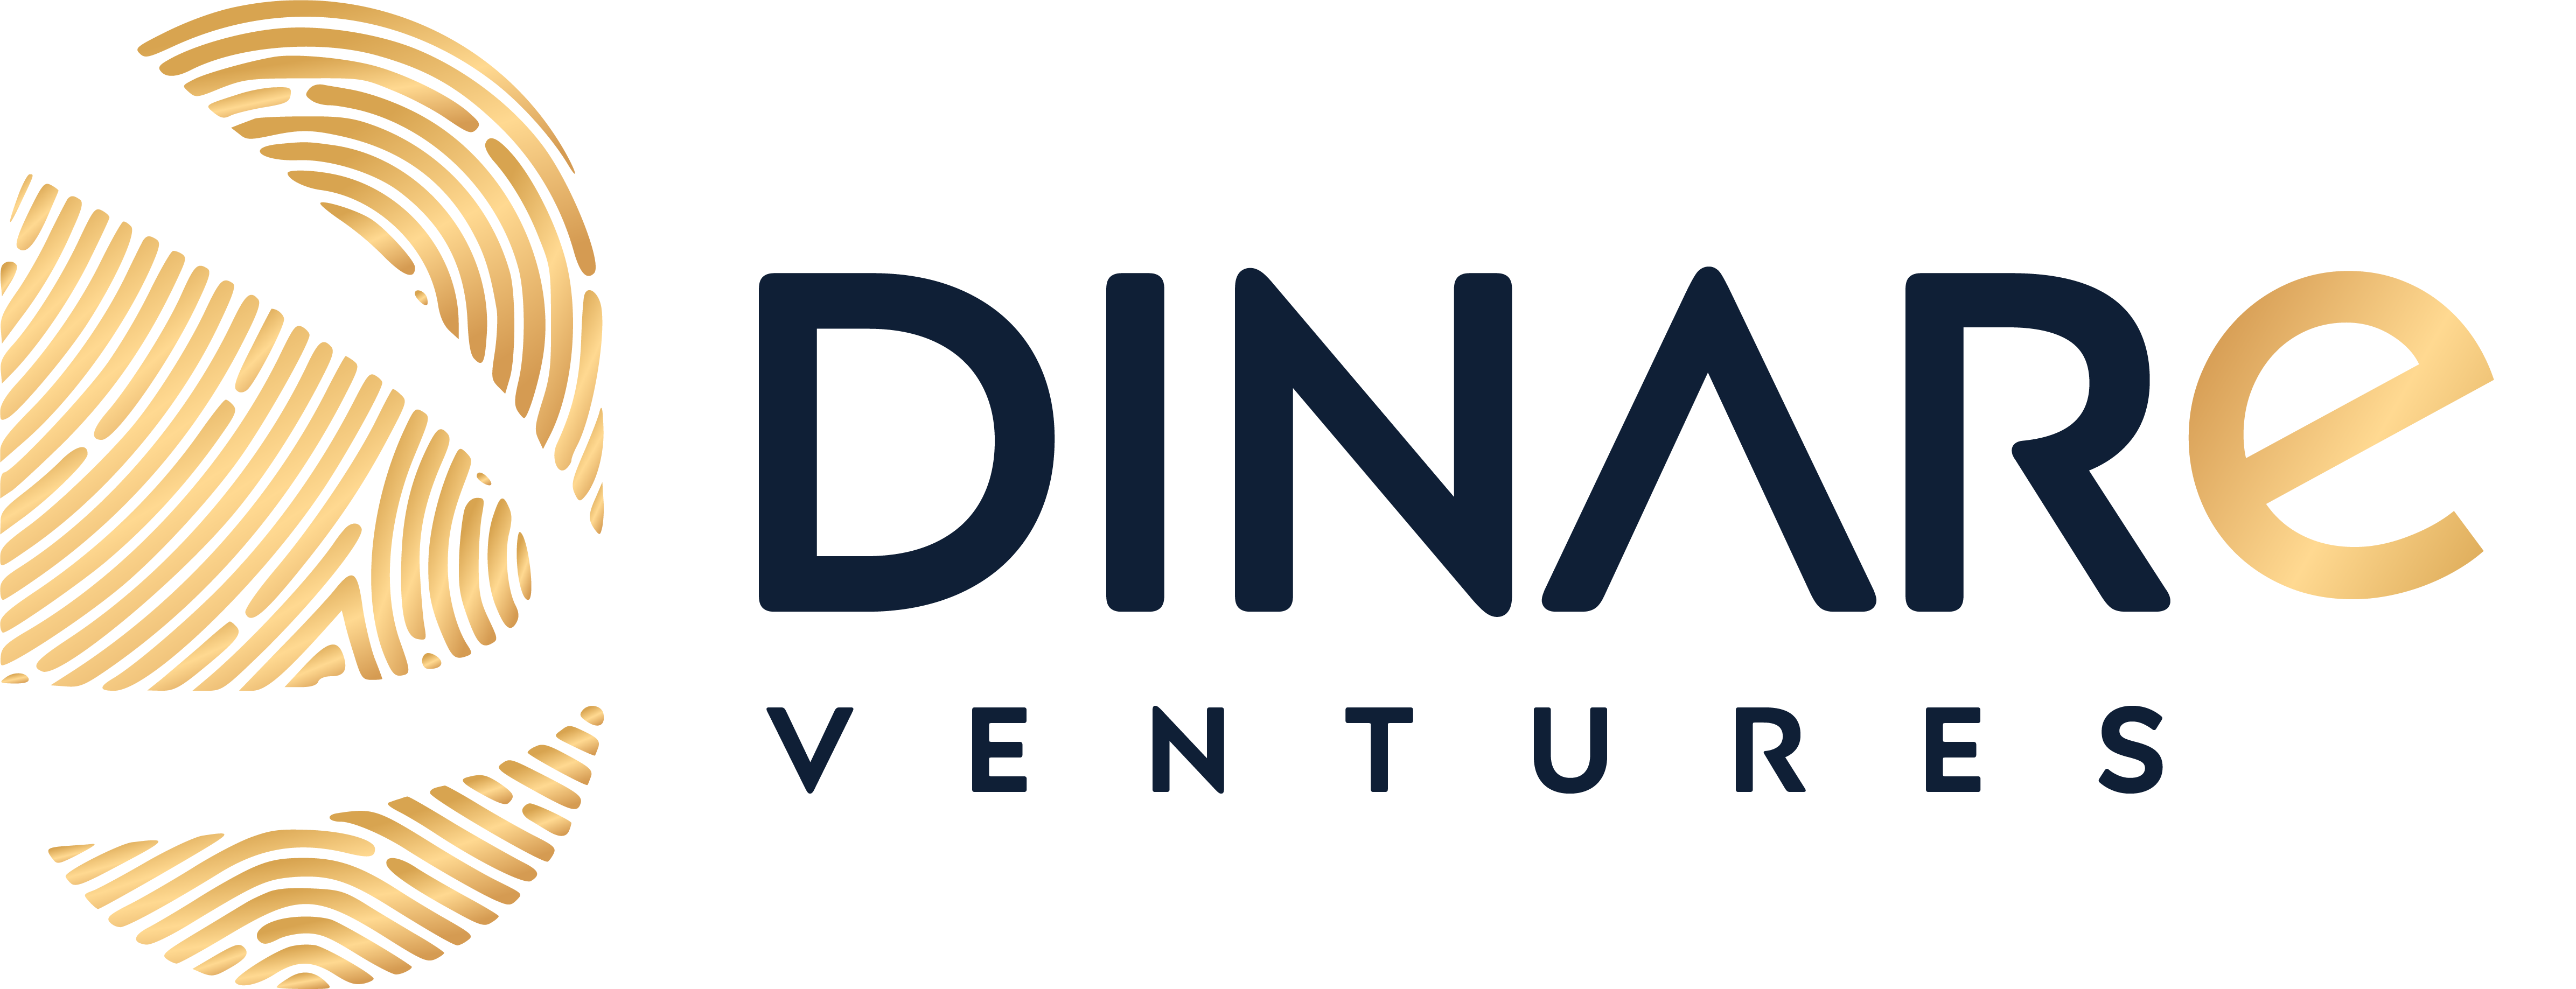 Dinare Ventures Website and Branding